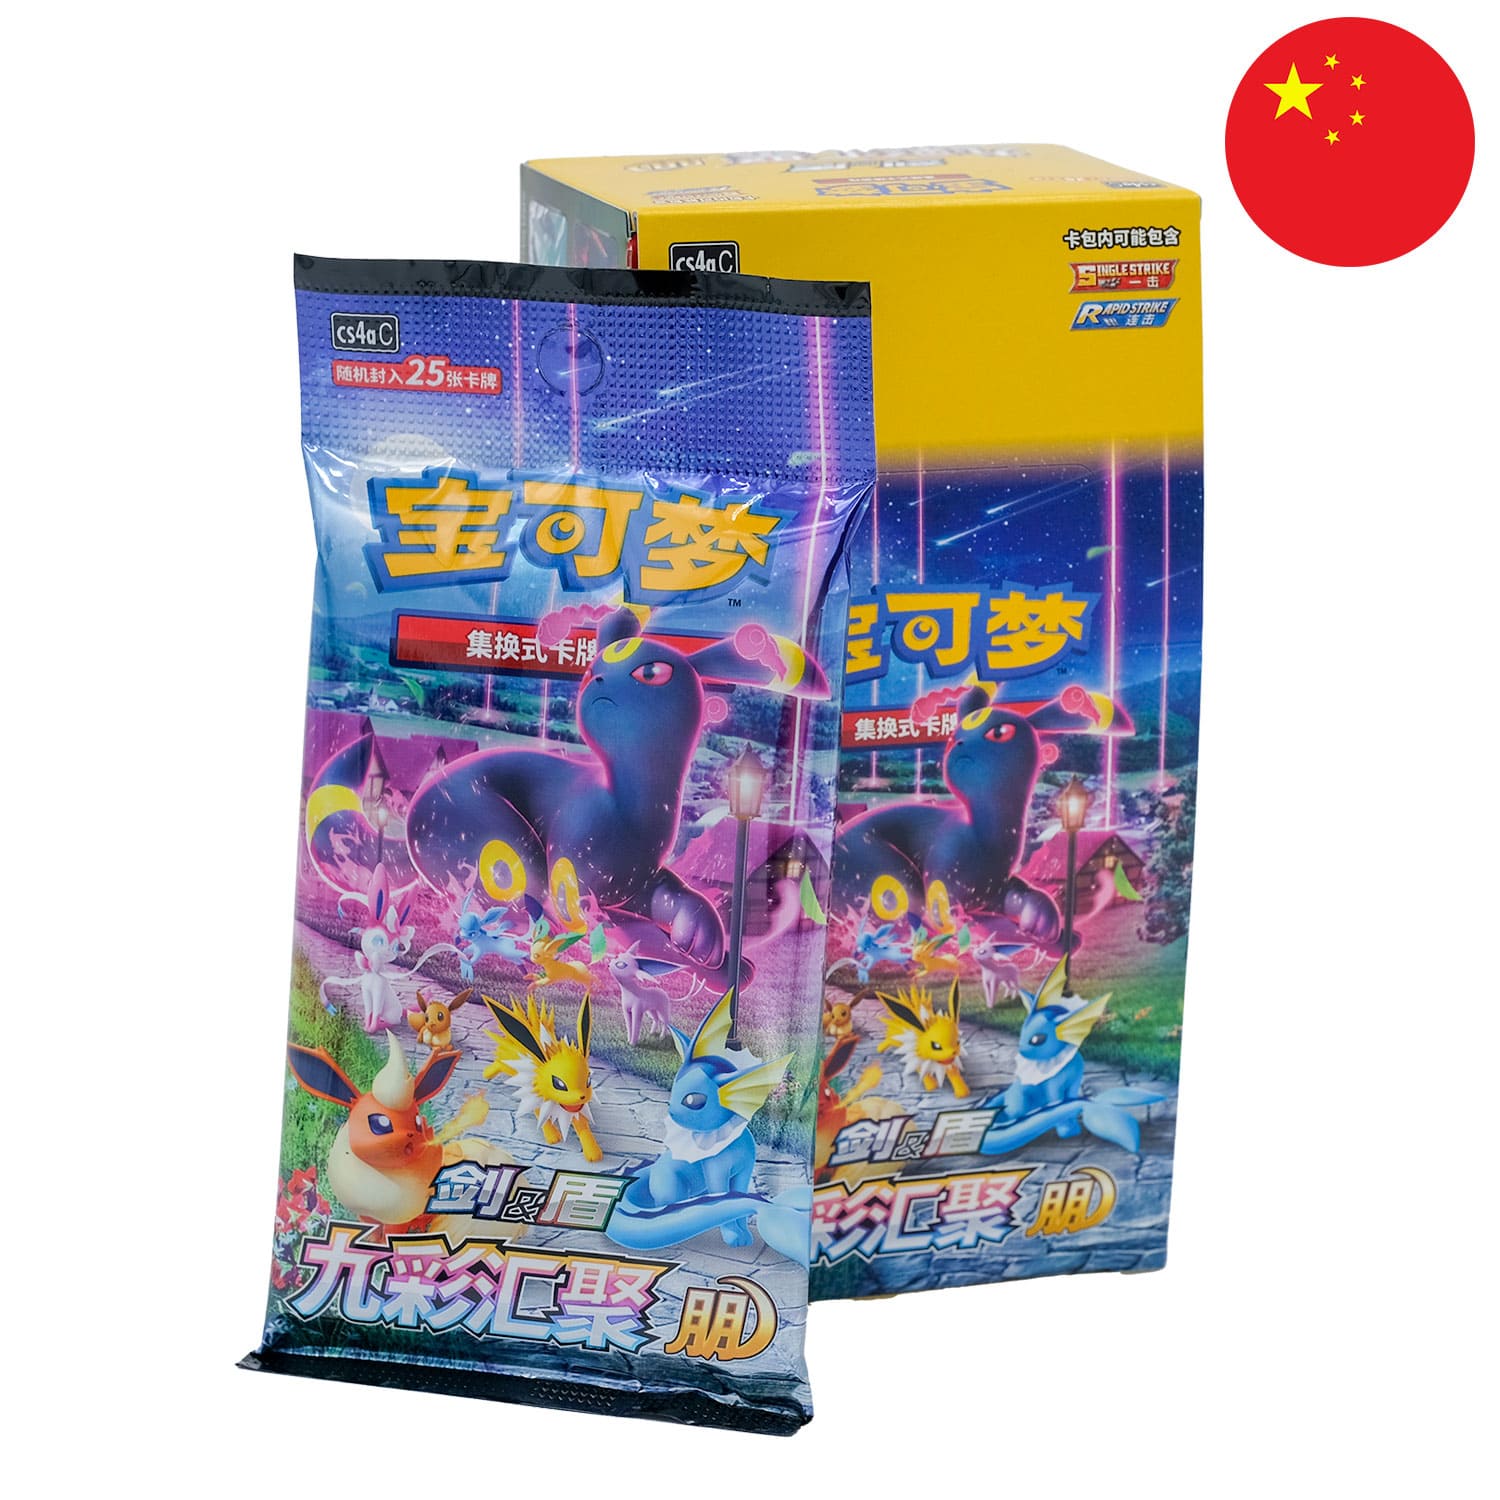 Das Pokemon Display Nine Colors Gathering: Friend (CS4a) und dem Boosterpack anliegend, mit der Flagge Chinas in der Ecke.